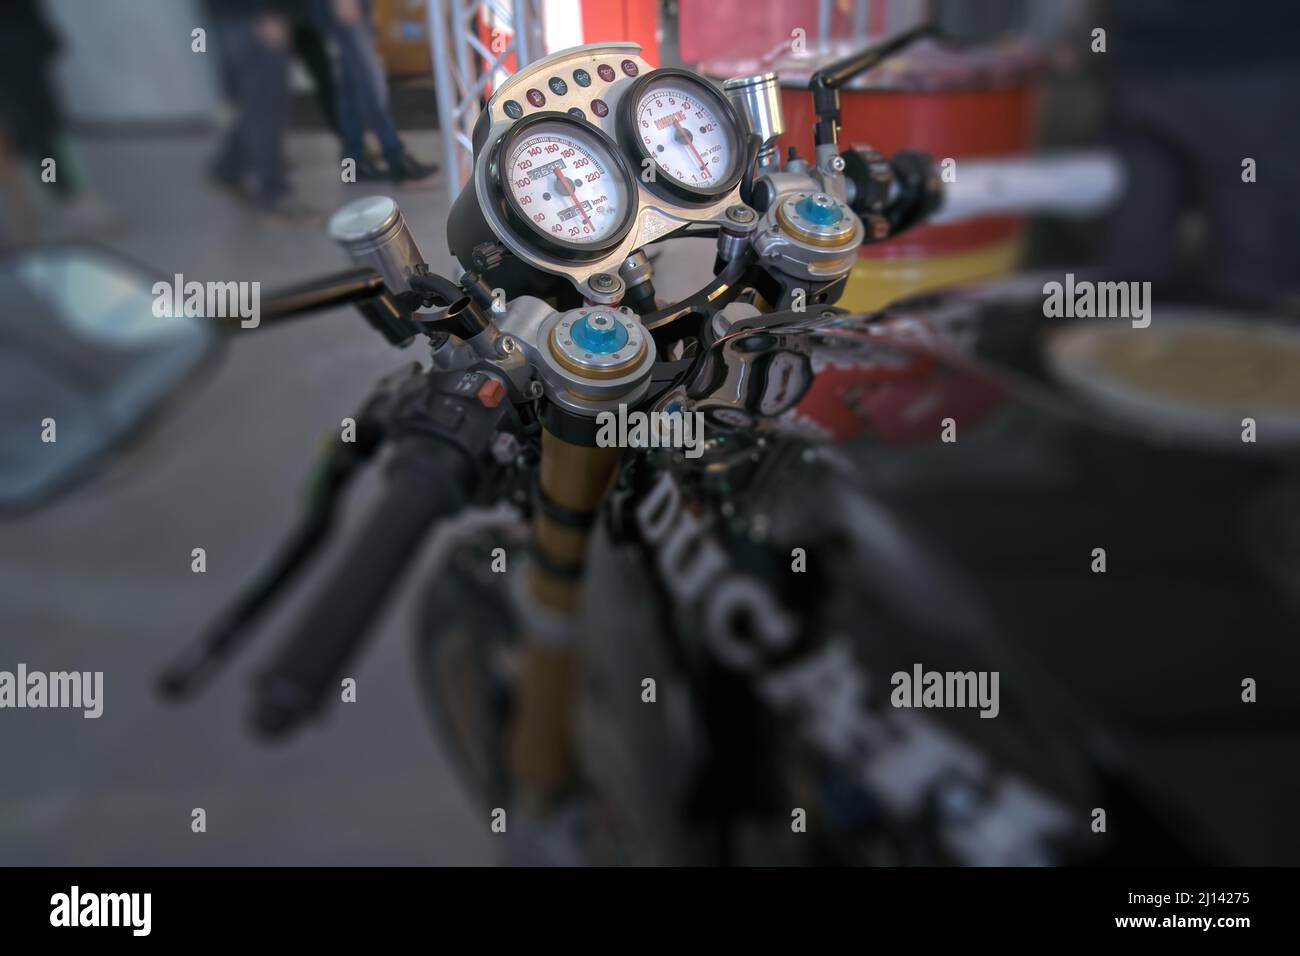 Contagiri moto immagini e fotografie stock ad alta risoluzione - Alamy